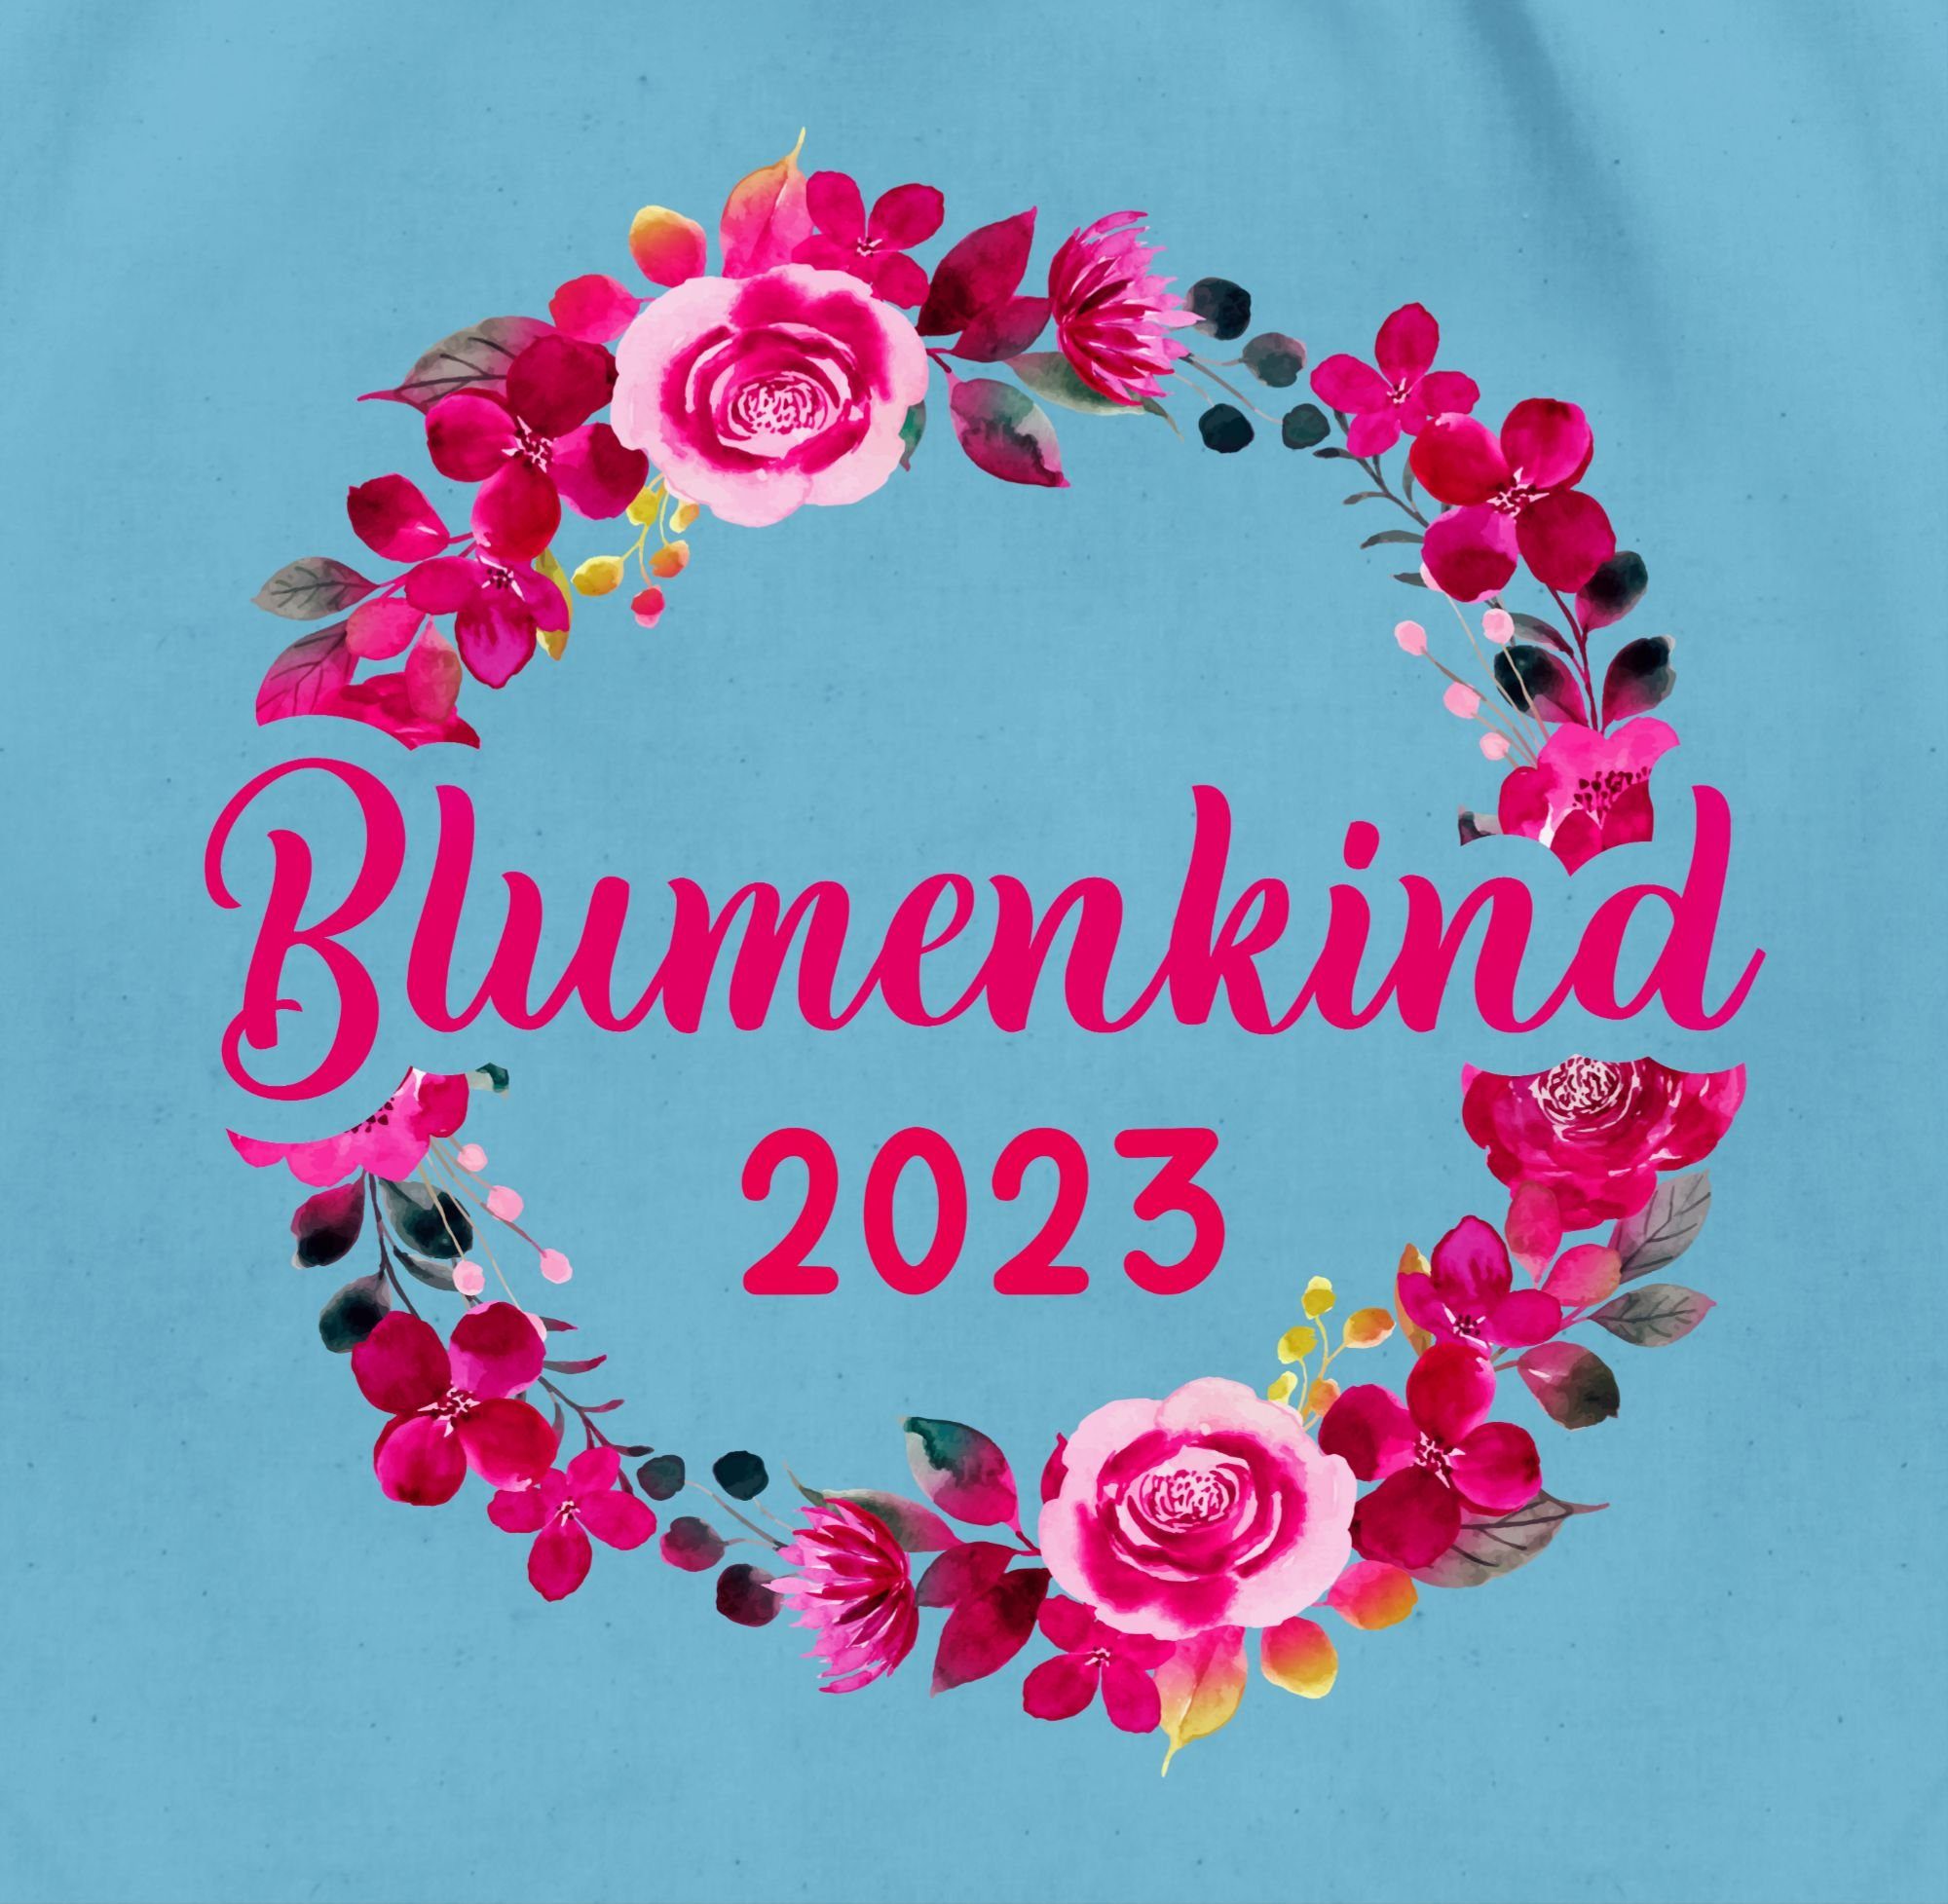 JGA Blumenkind Turnbeutel Hellblau Junggesellenabschied Frauen Blumenkranz, 2023 01 Shirtracer